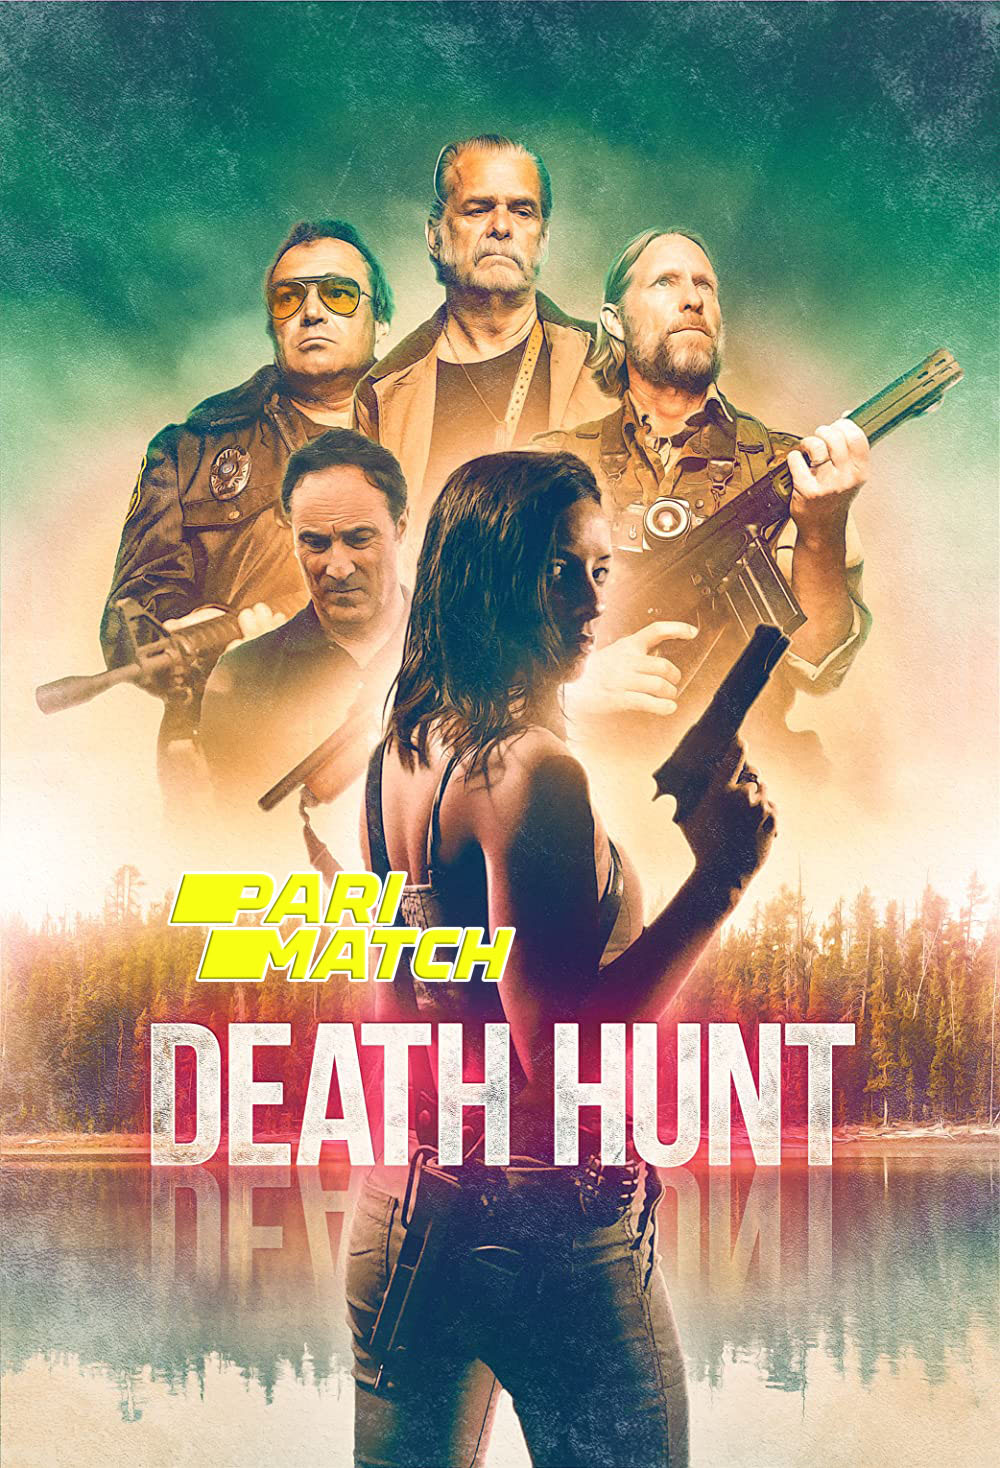 Death Hunt (2022) Bengali Dubbed (VO) [PariMatch] 720p WEBRip Download